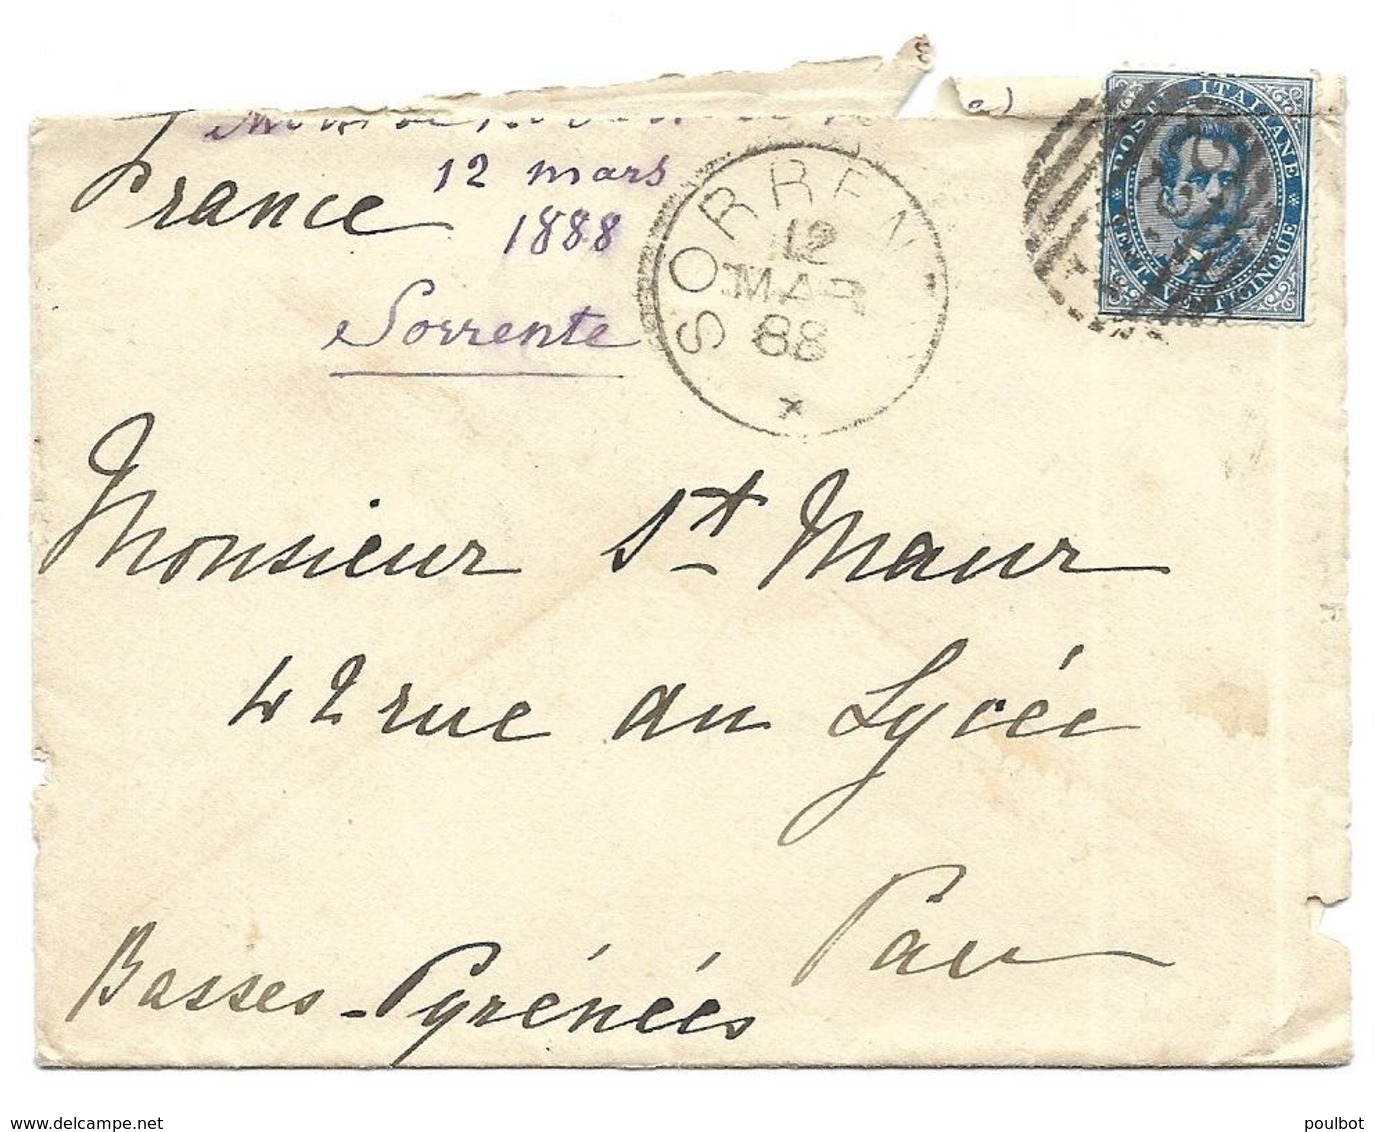 ITALIE Enveloppe Oblitération Sorrente 12 4 1888 - Marcophilie